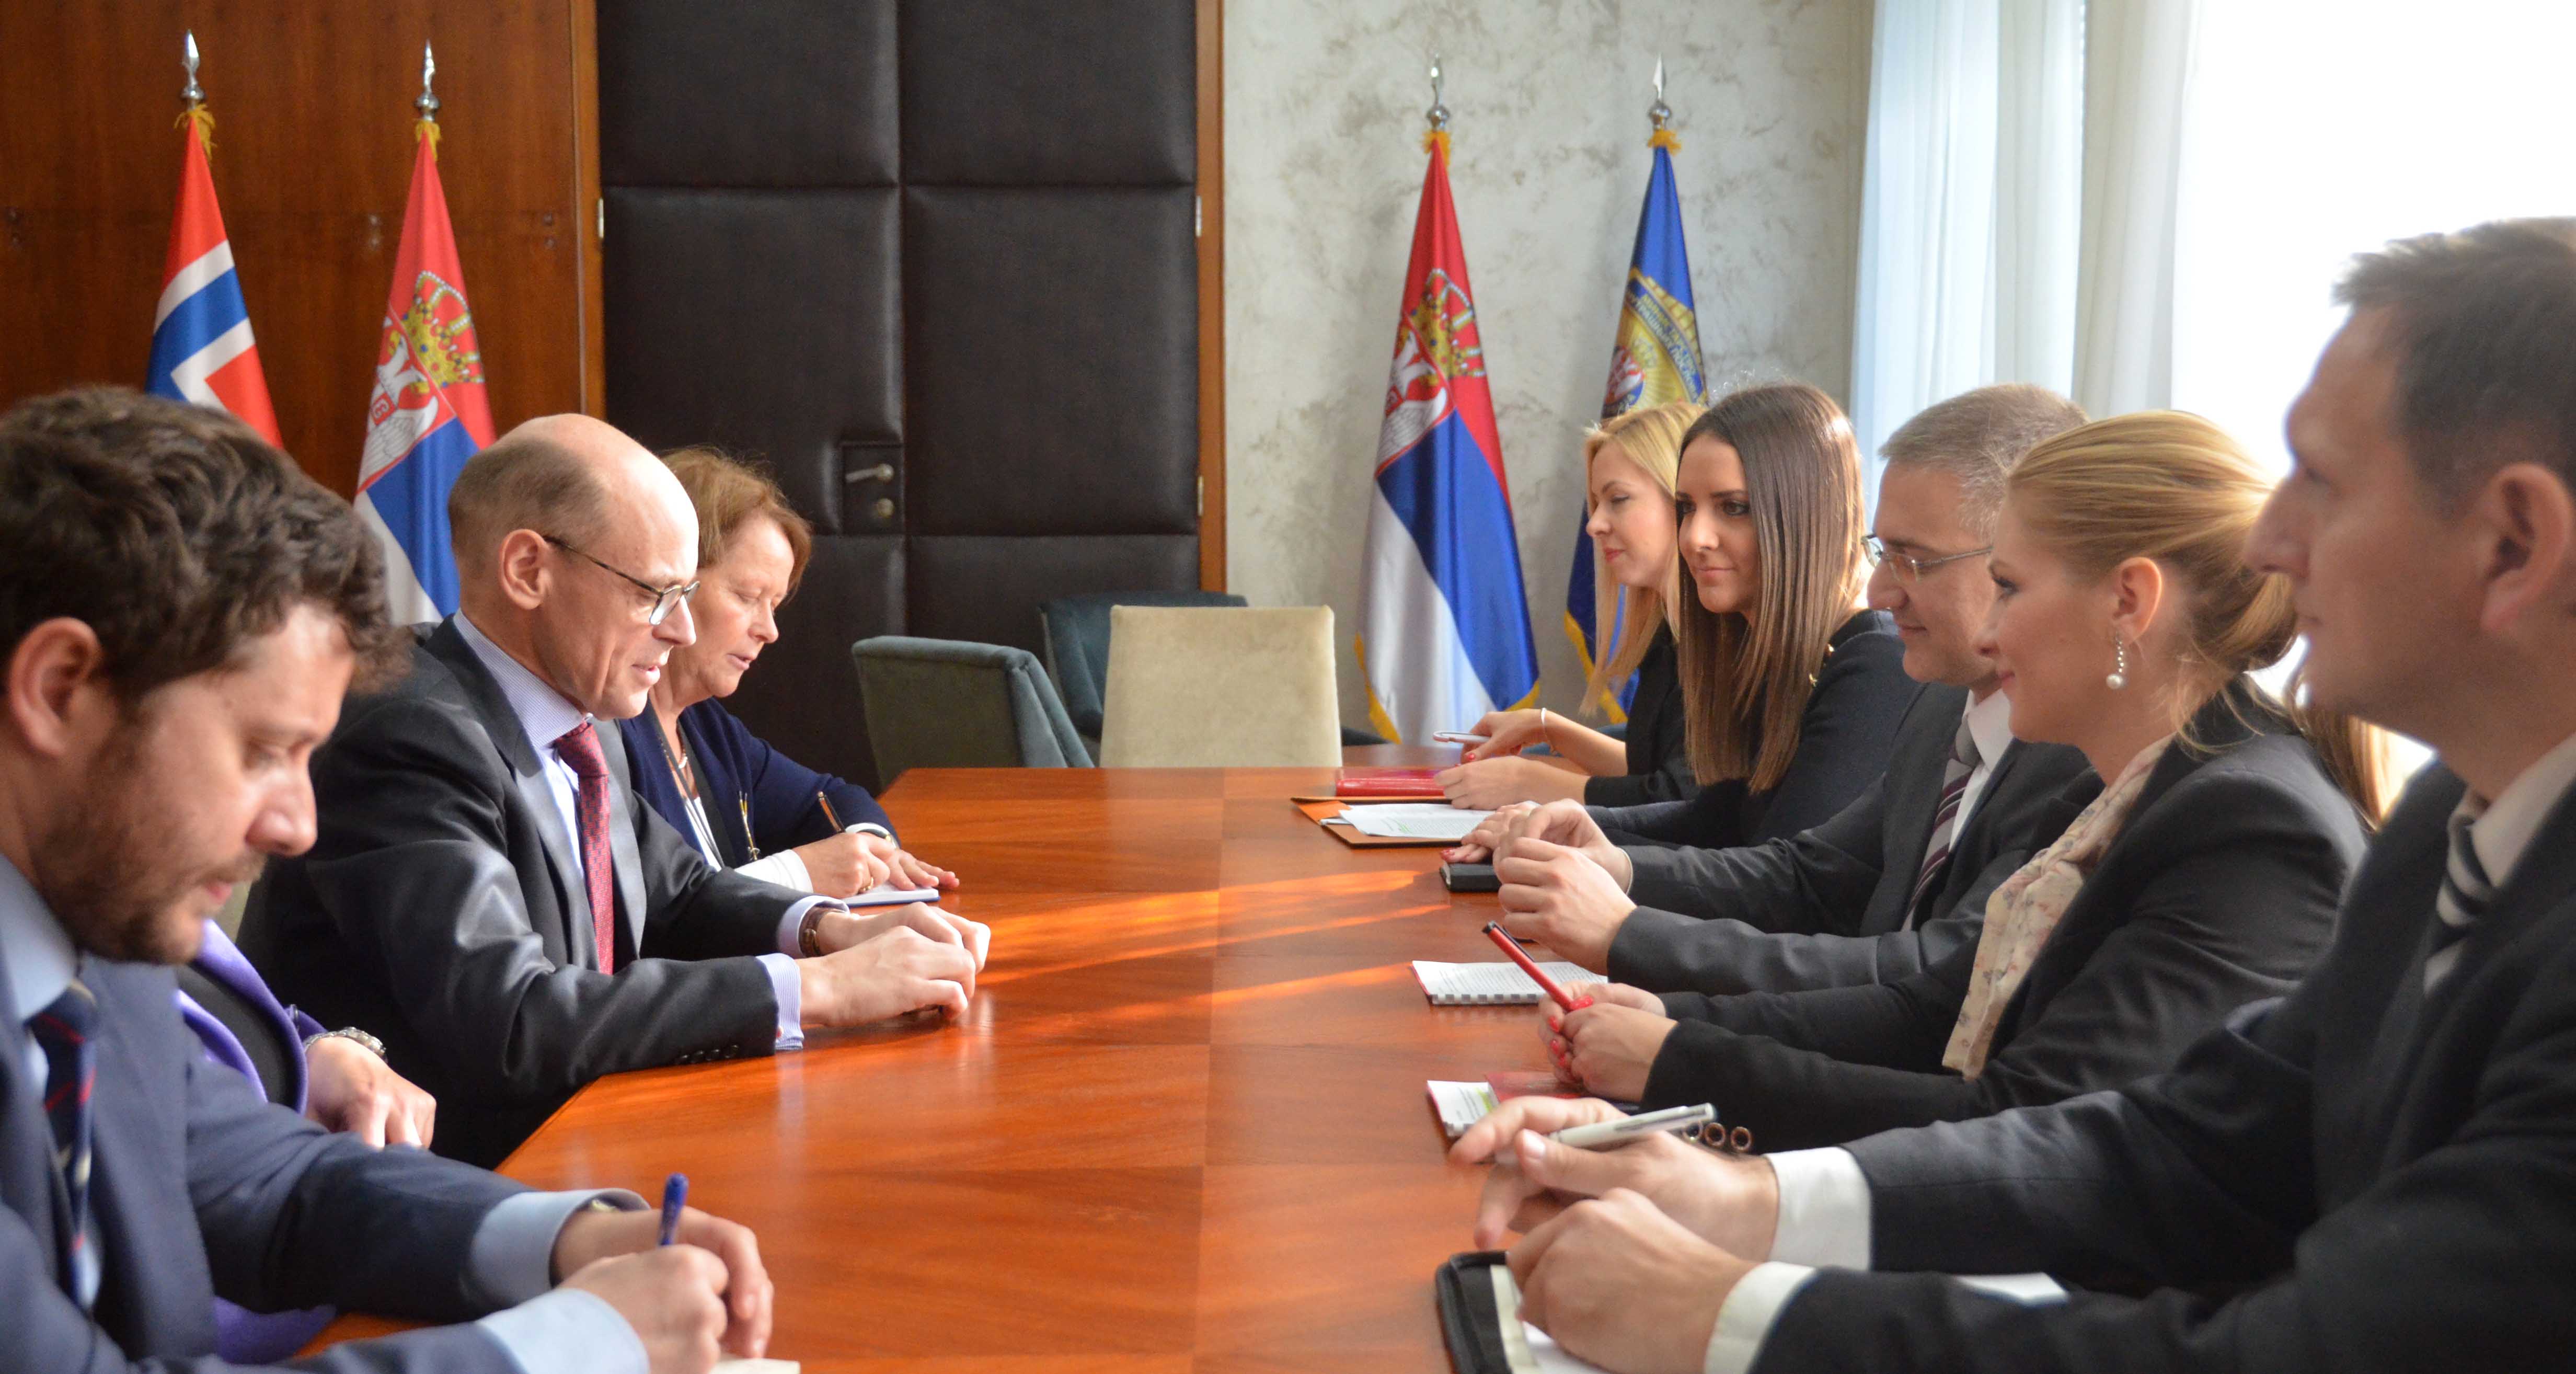  Kraljevina Norveška nastaviće da pruža Srbiji podršku u reformskim procesima